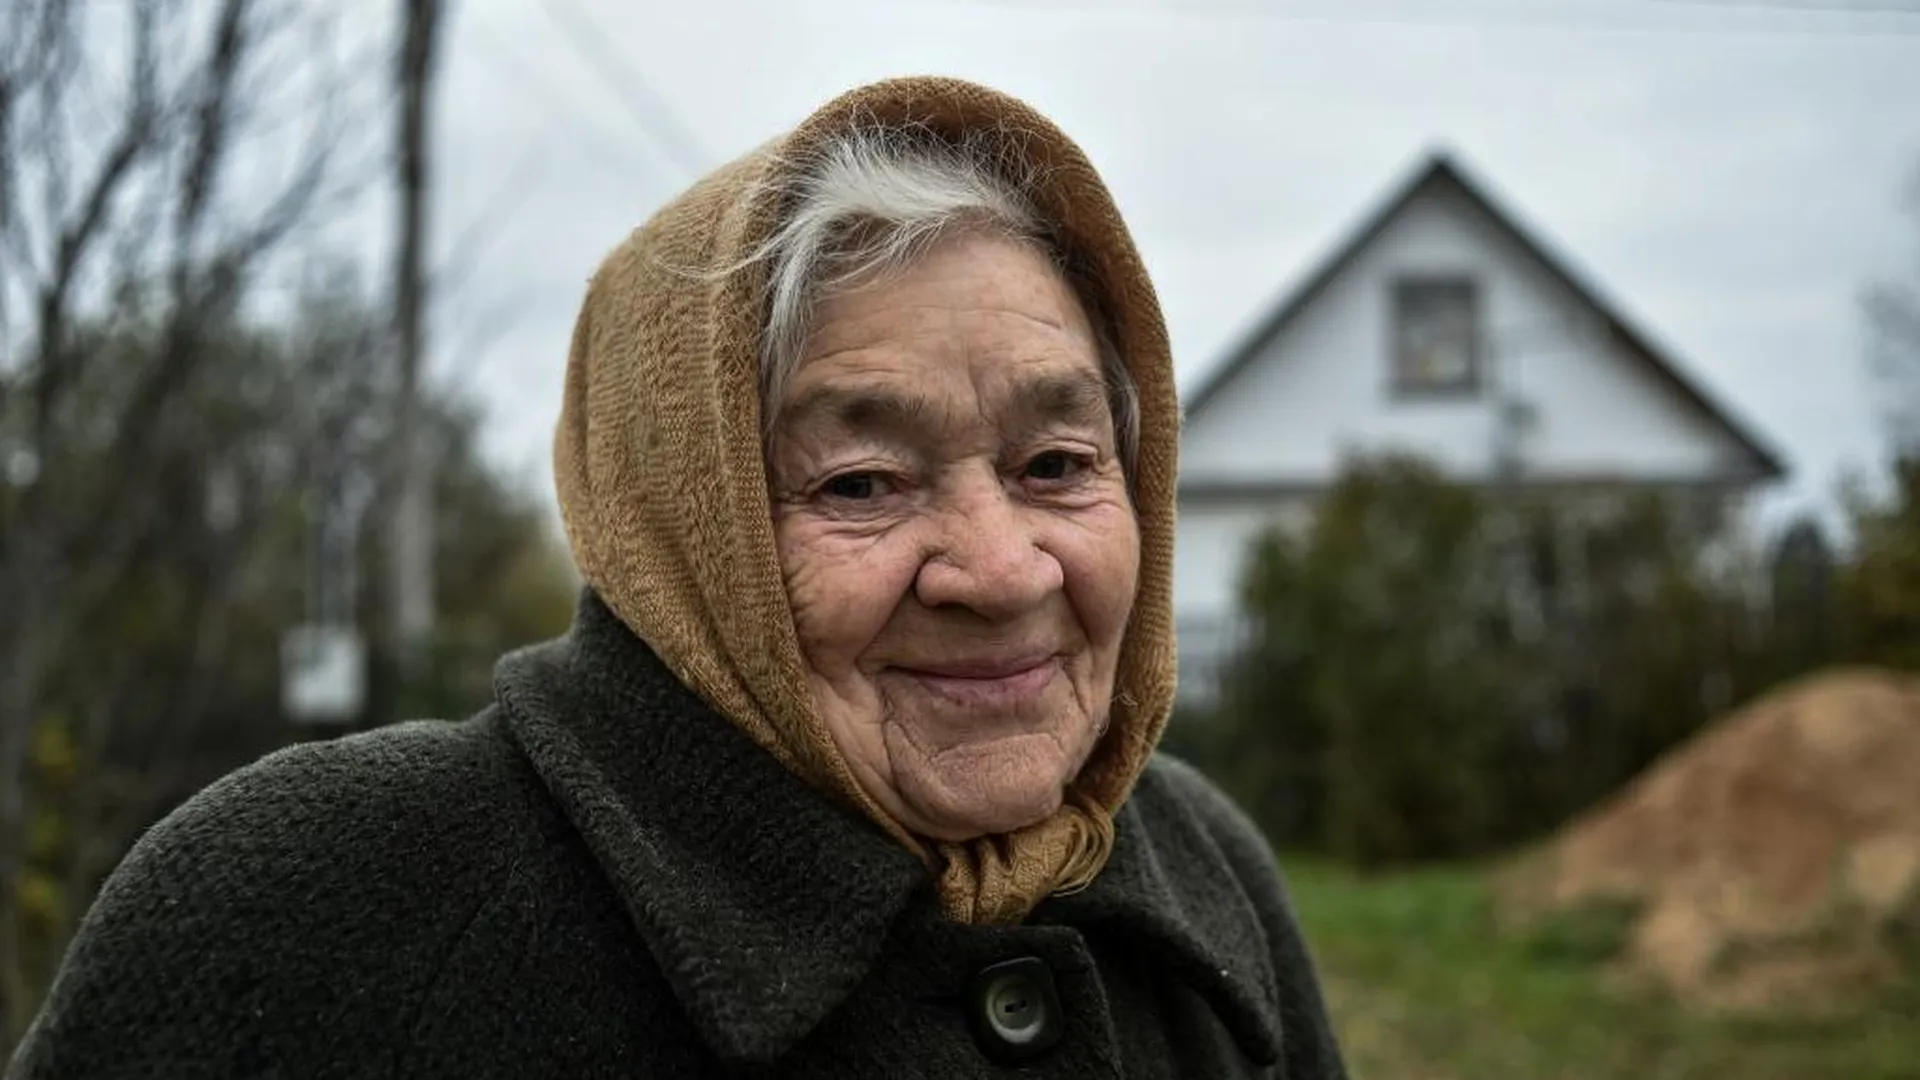 Количество пенсионеров вырастет в РФ впервые за 5 лет